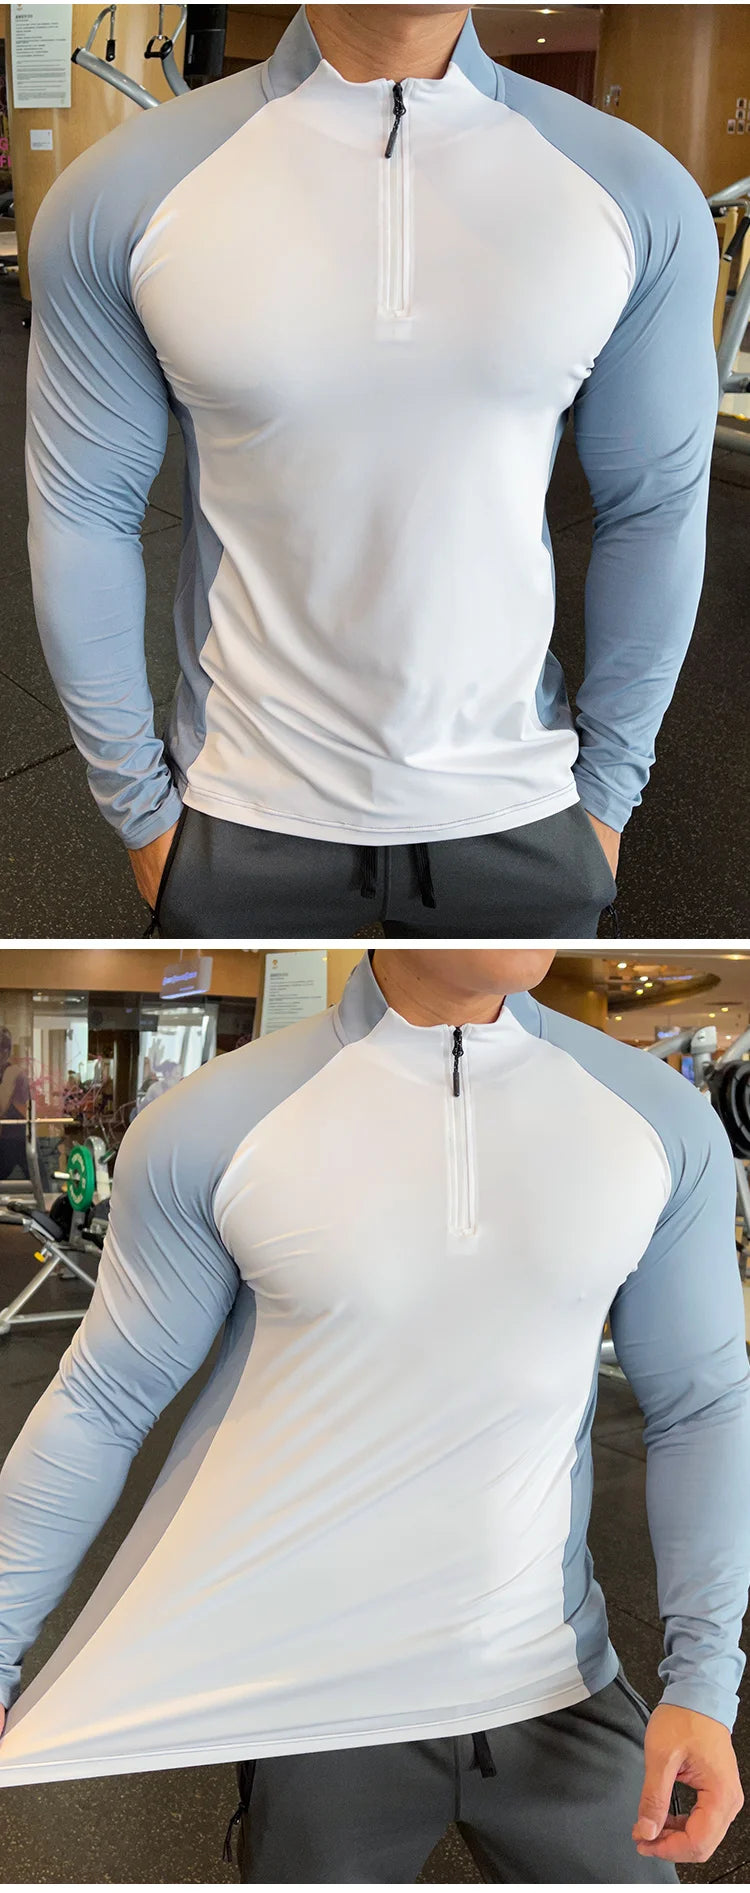 Men's Fitness Training T-shirt